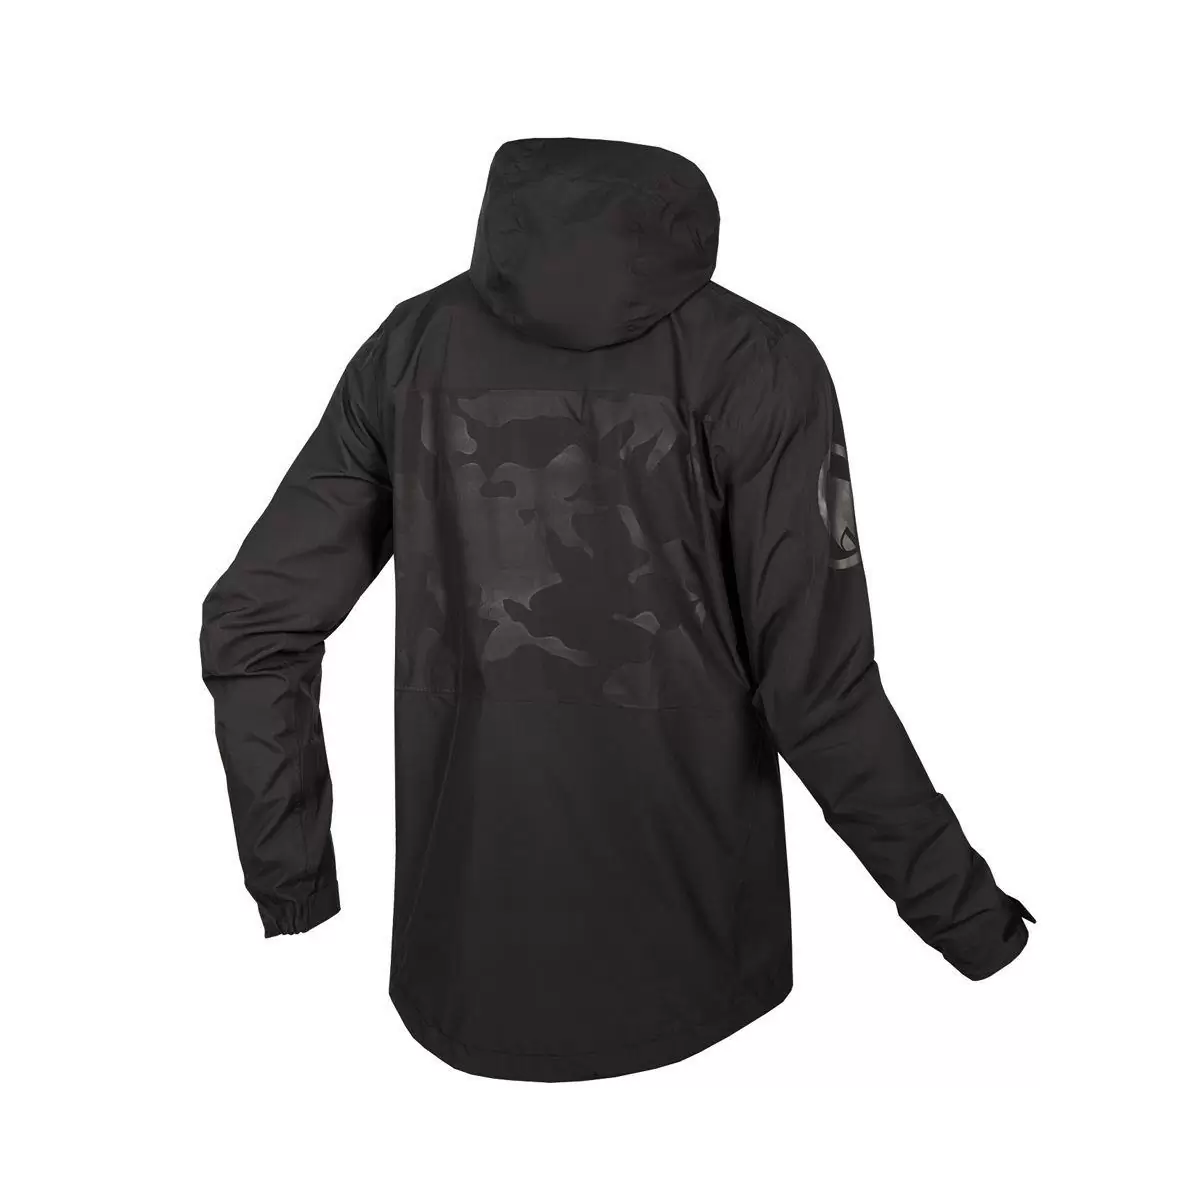 SingleTrack Jacket II Waterproof Black Size S #1